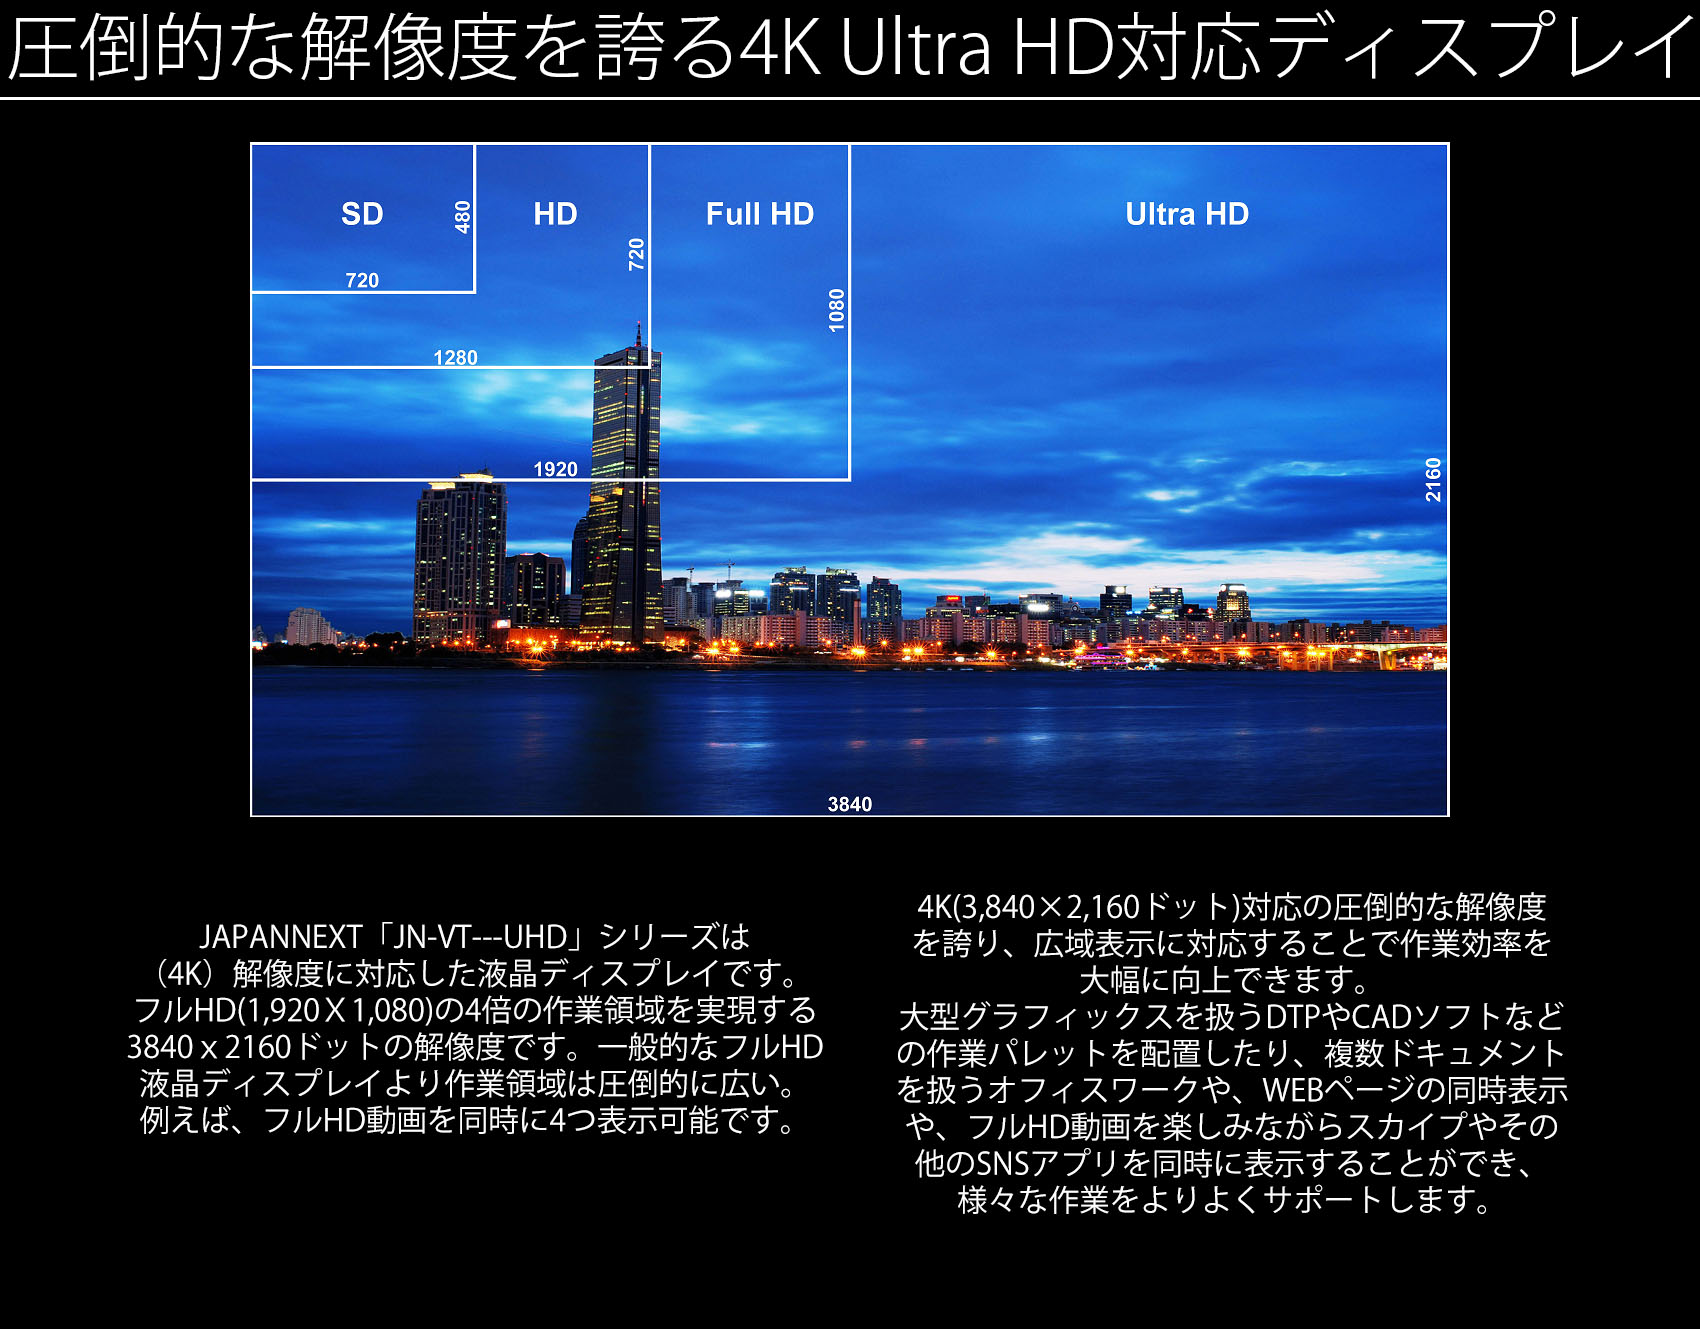 JN-IPS4302TUHD 4kモニター 43型 UHDディスプレイ IPS系パネル HDMI2.0 